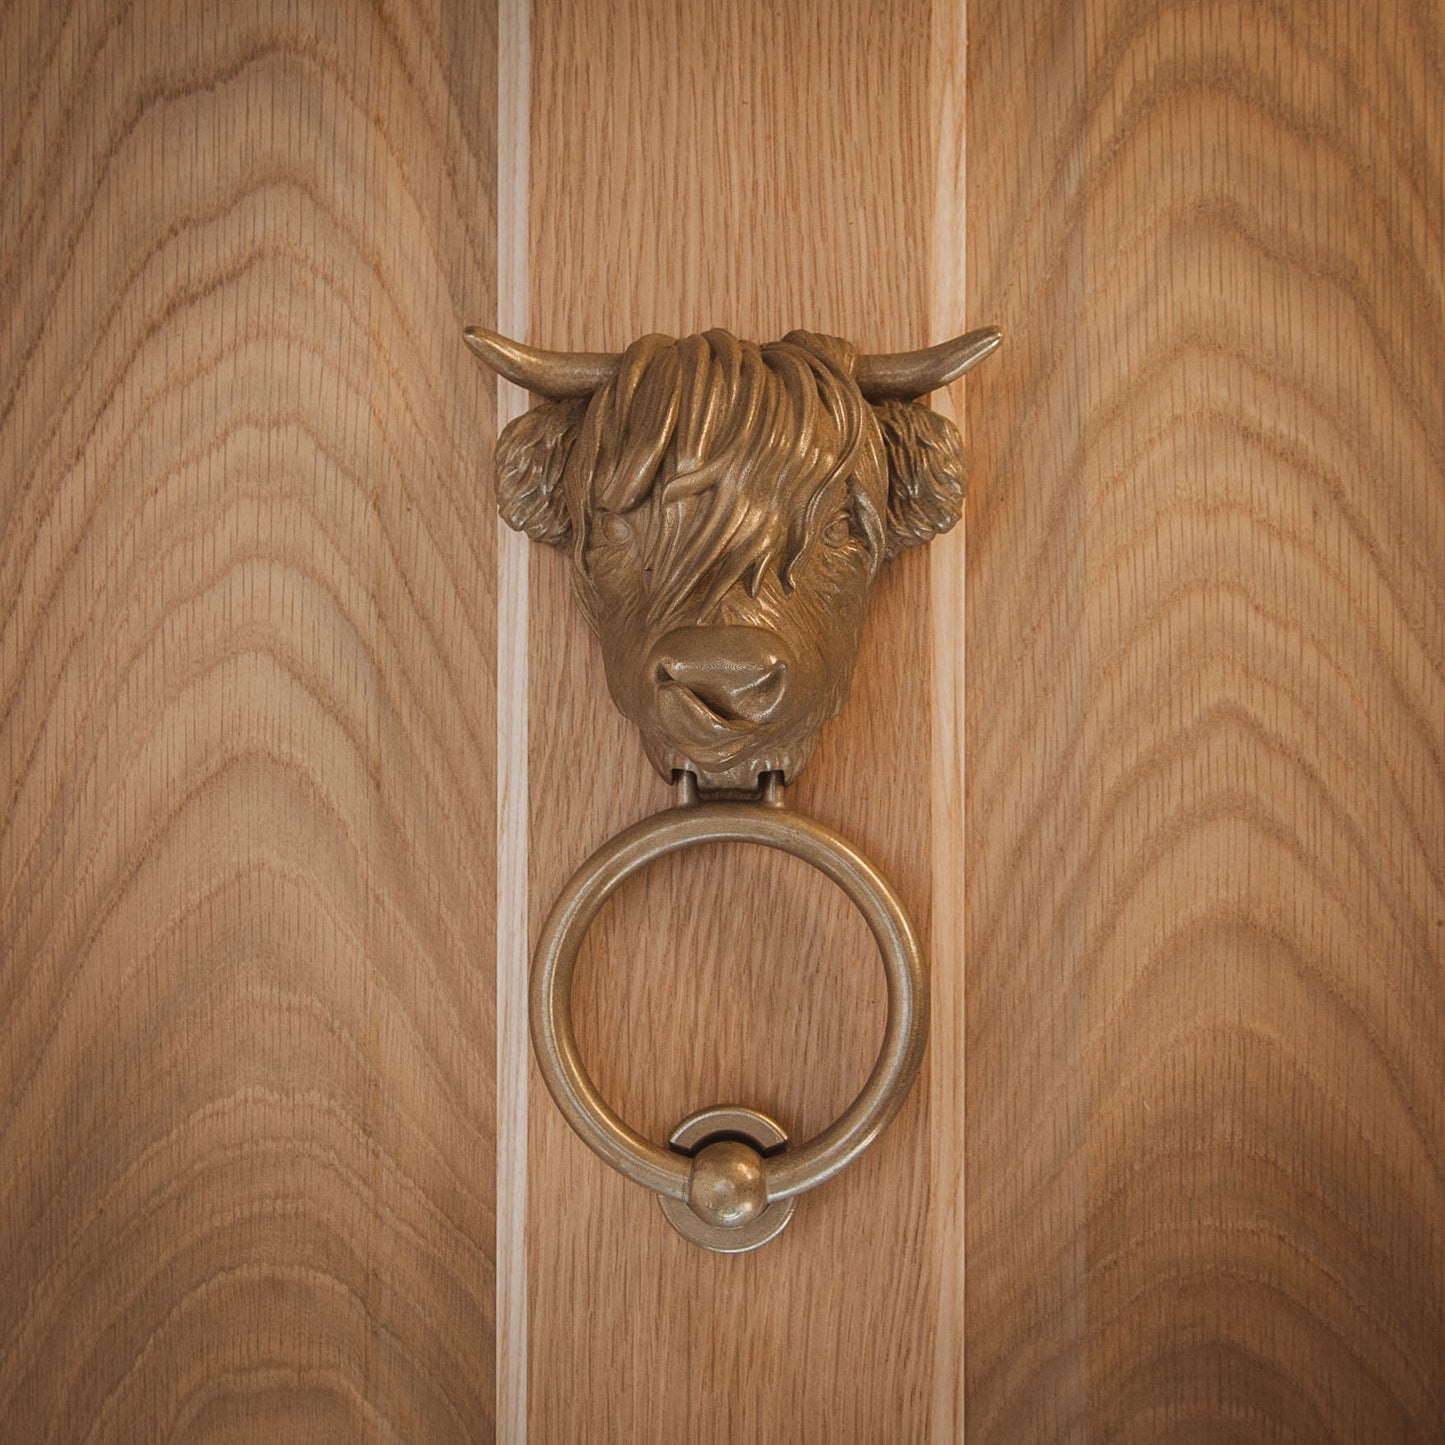 Highland Cow Door Knocker (2 styles)